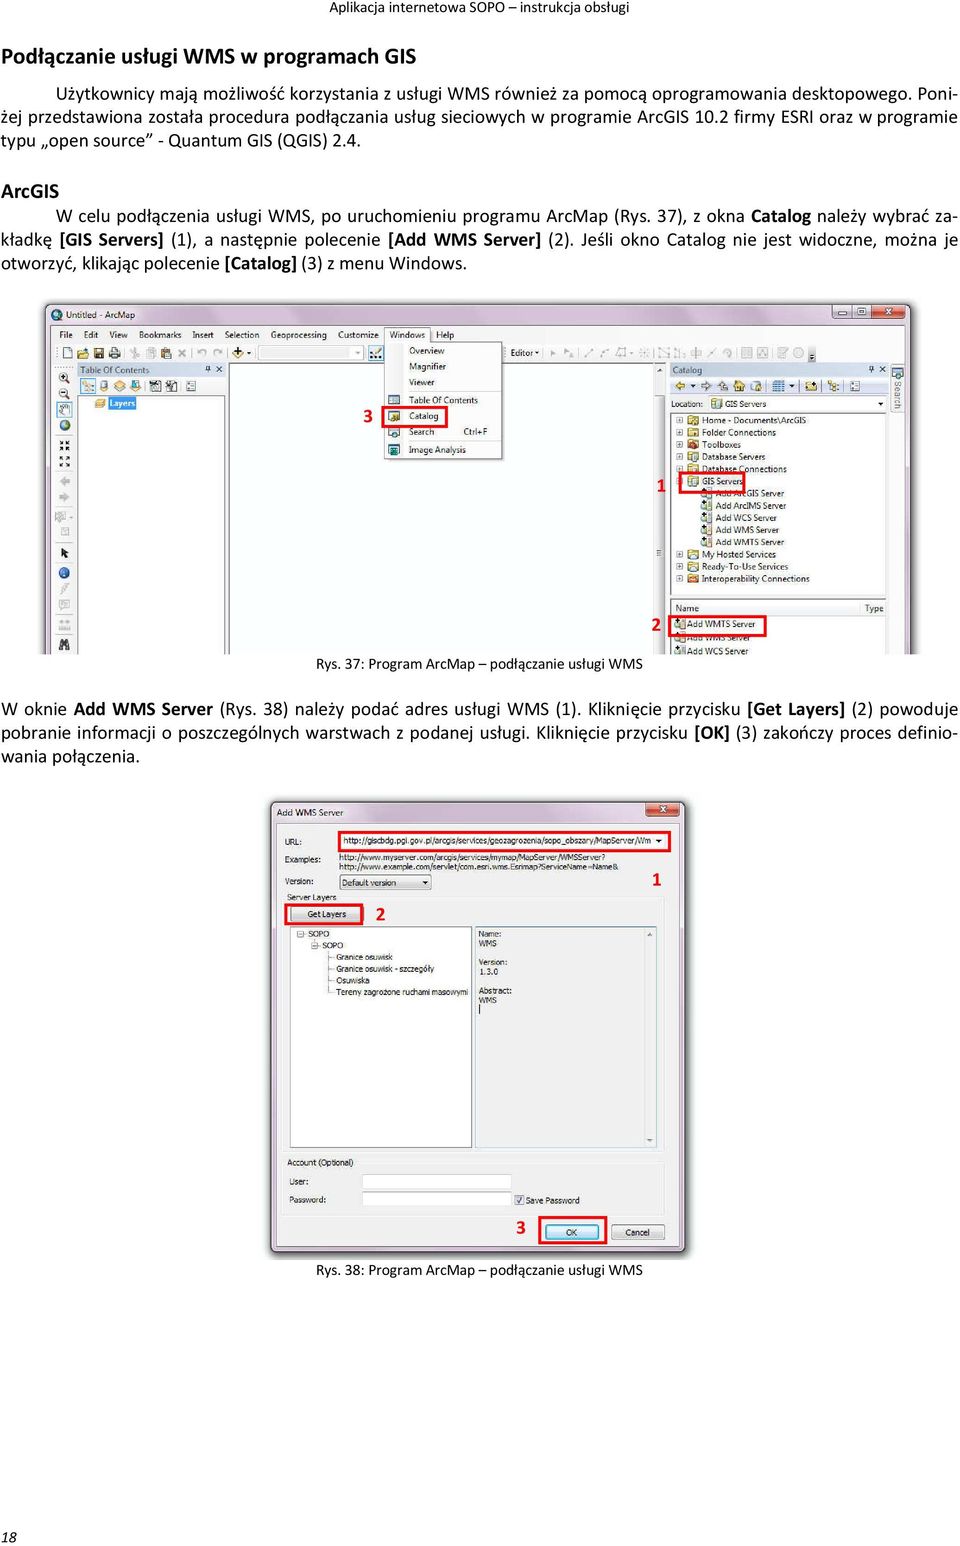 ArcGIS W celu podłączenia usługi WMS, po uruchomieniu programu ArcMap (Rys. 37), z okna Catalog należy wybrać zakładkę [GIS Servers] (1), a następnie polecenie [Add WMS Server] (2).